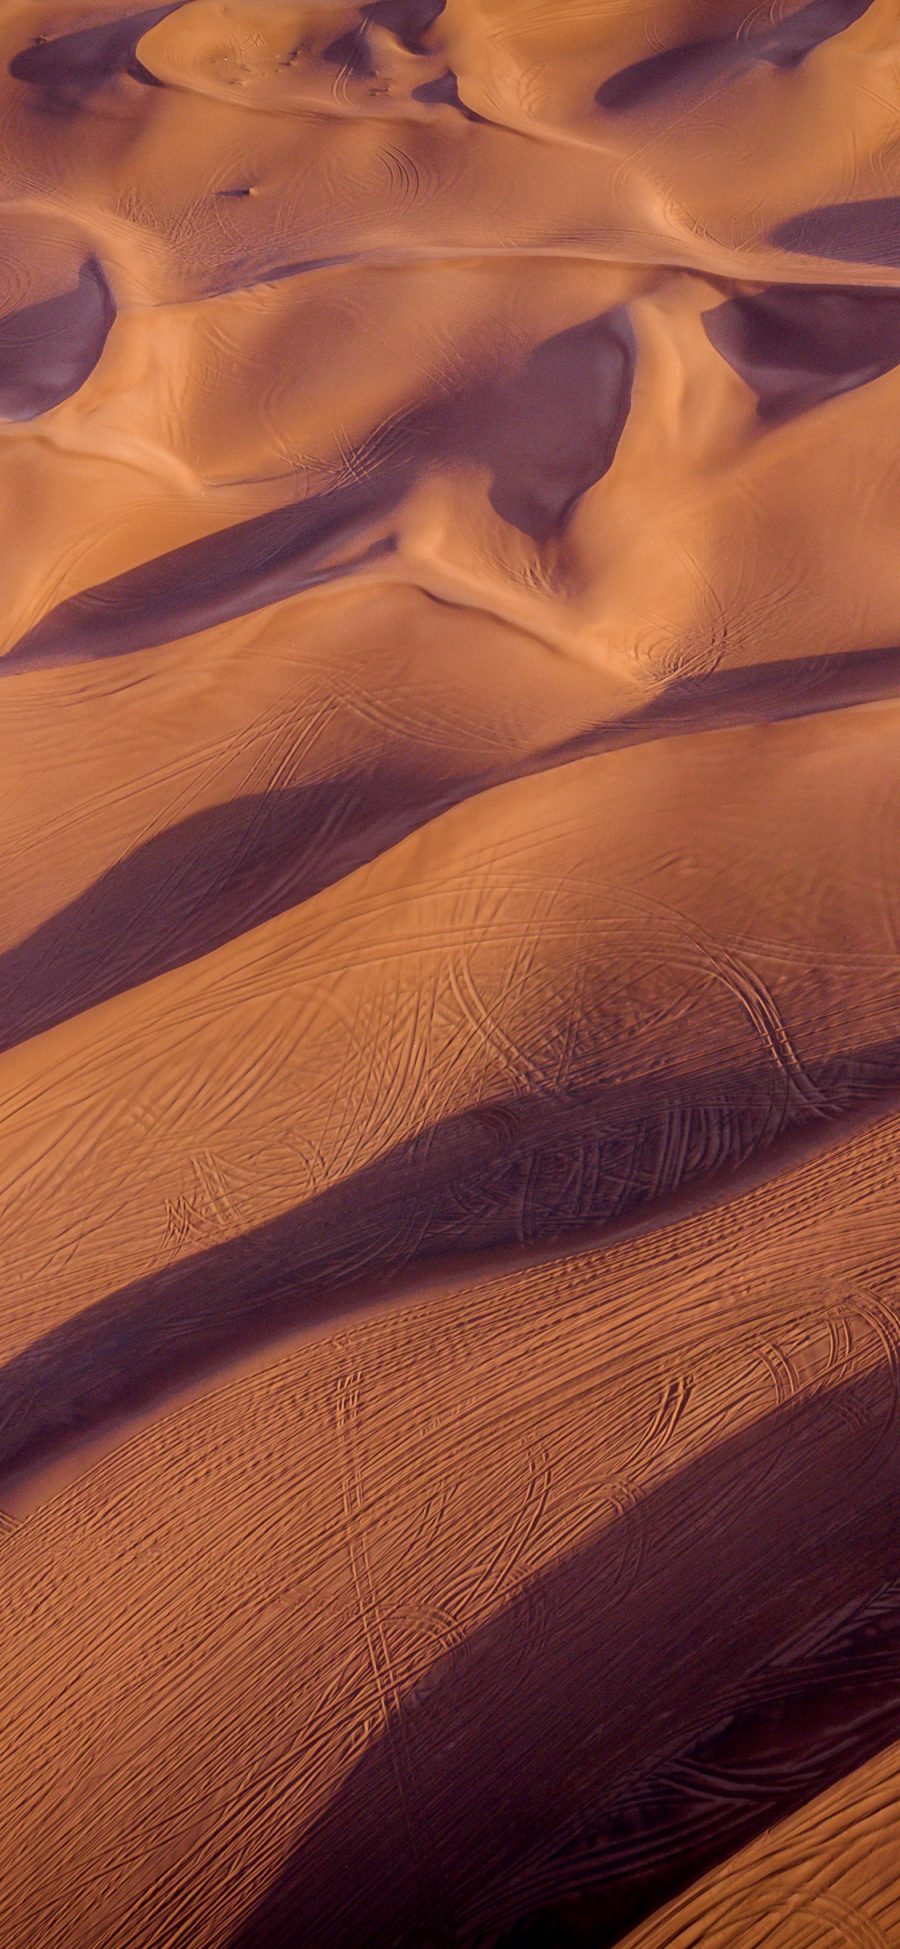 [2436×1125]沙漠 影子 曲线 痕迹 苹果手机壁纸图片